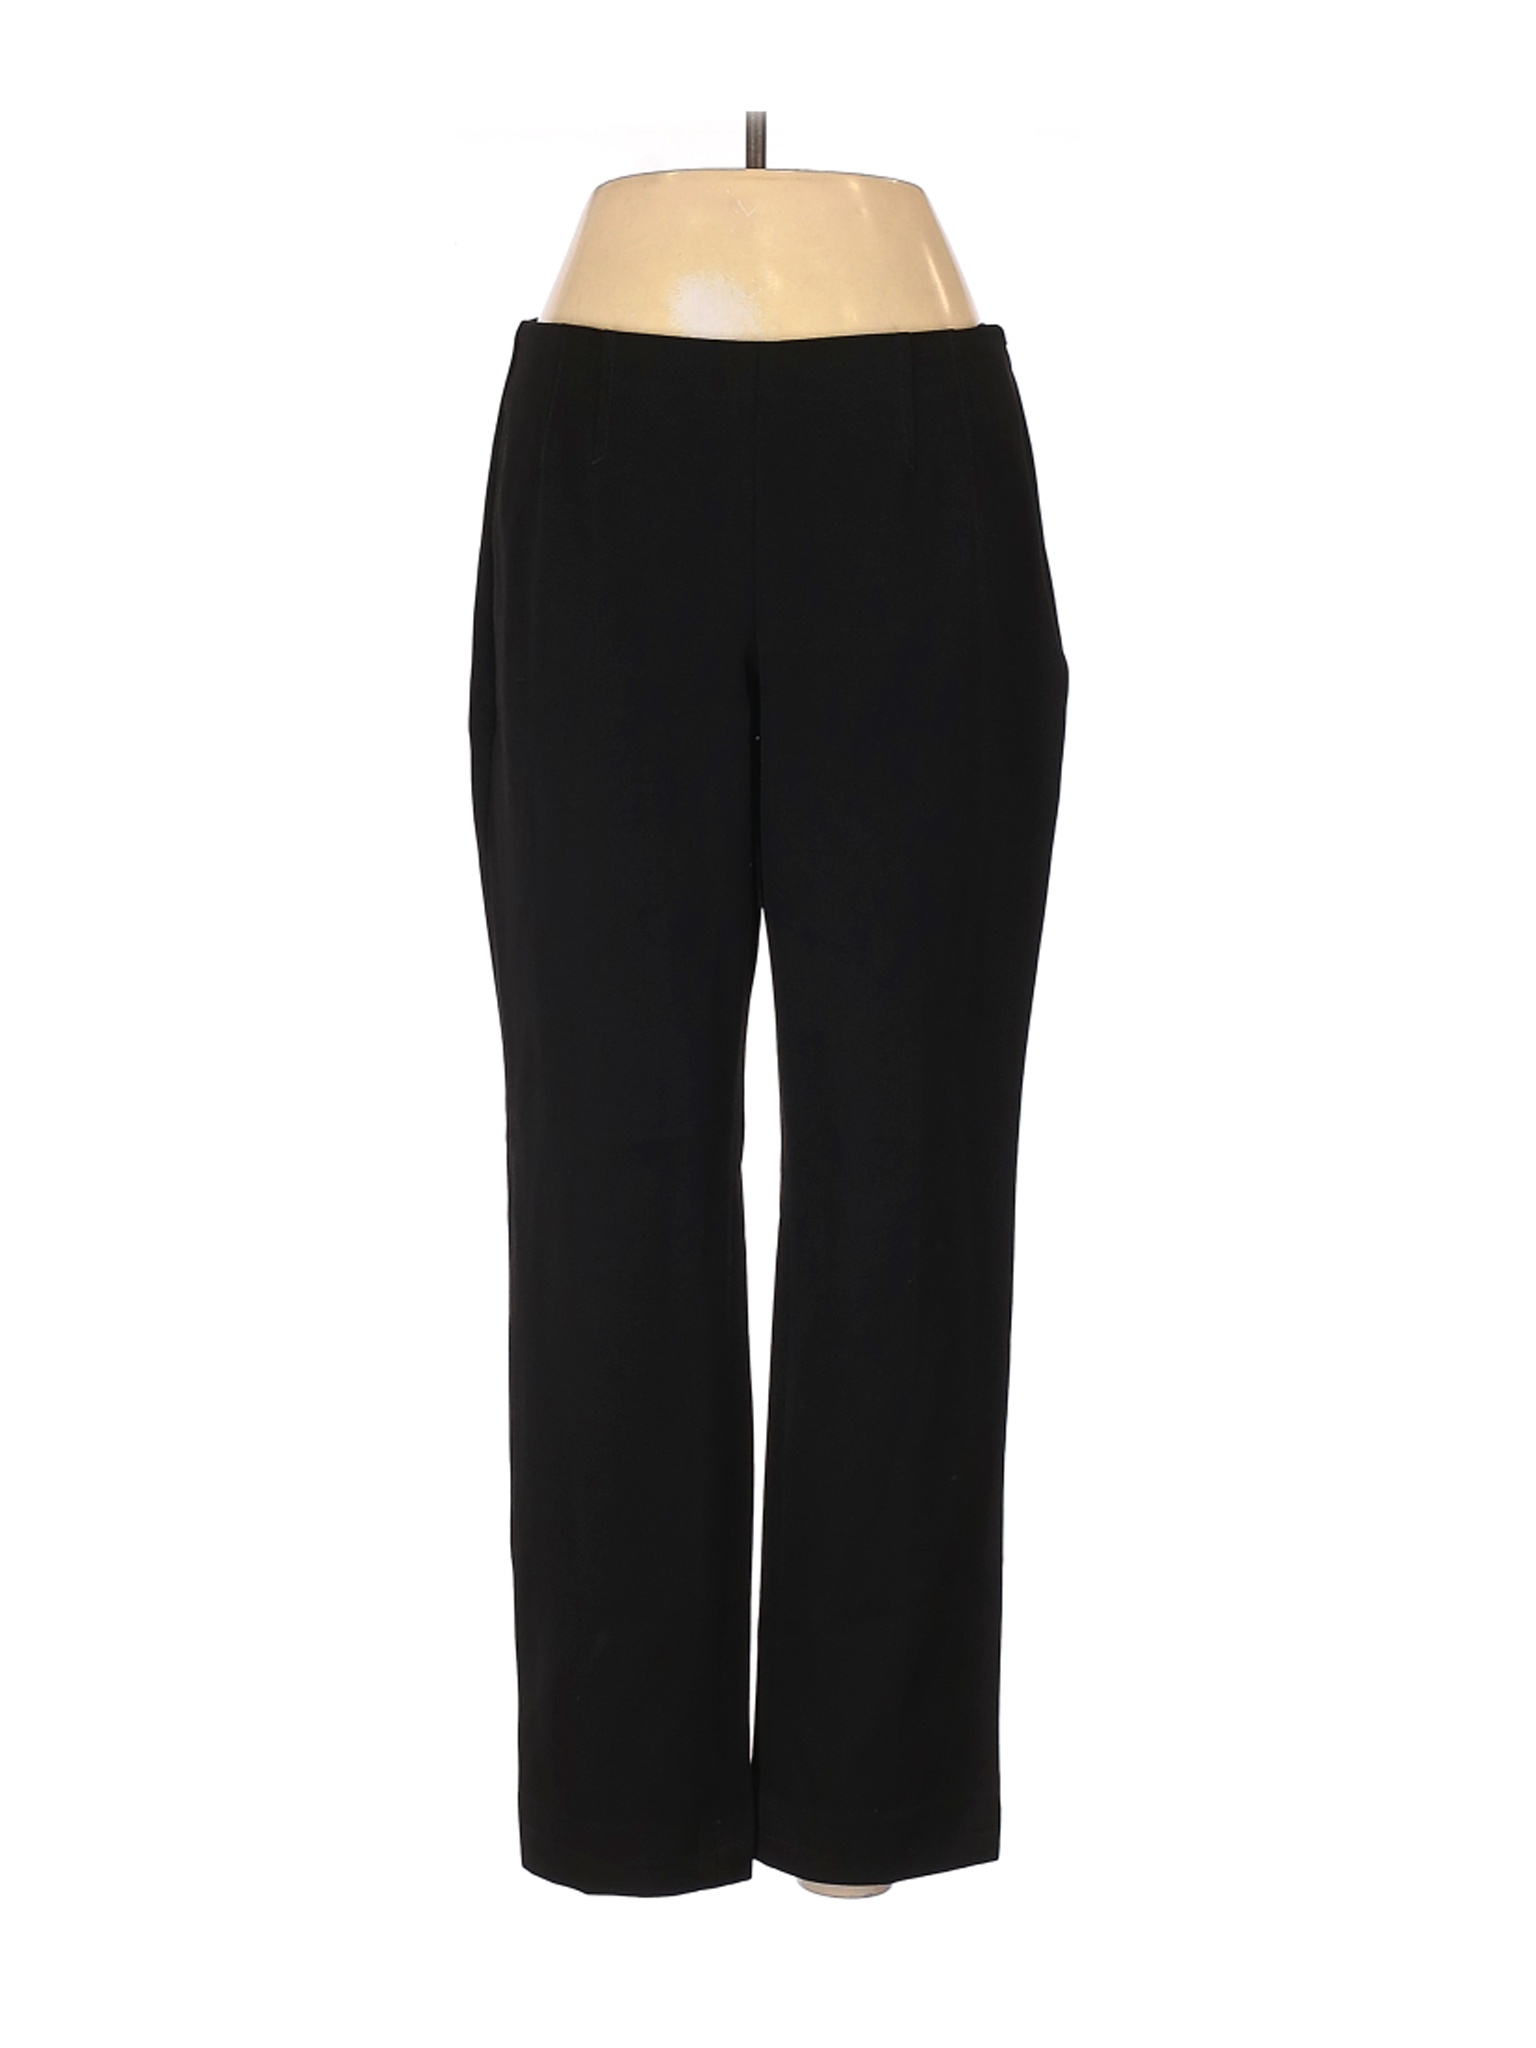 Talbots Women Black Dress Pants 6 Tall | eBay